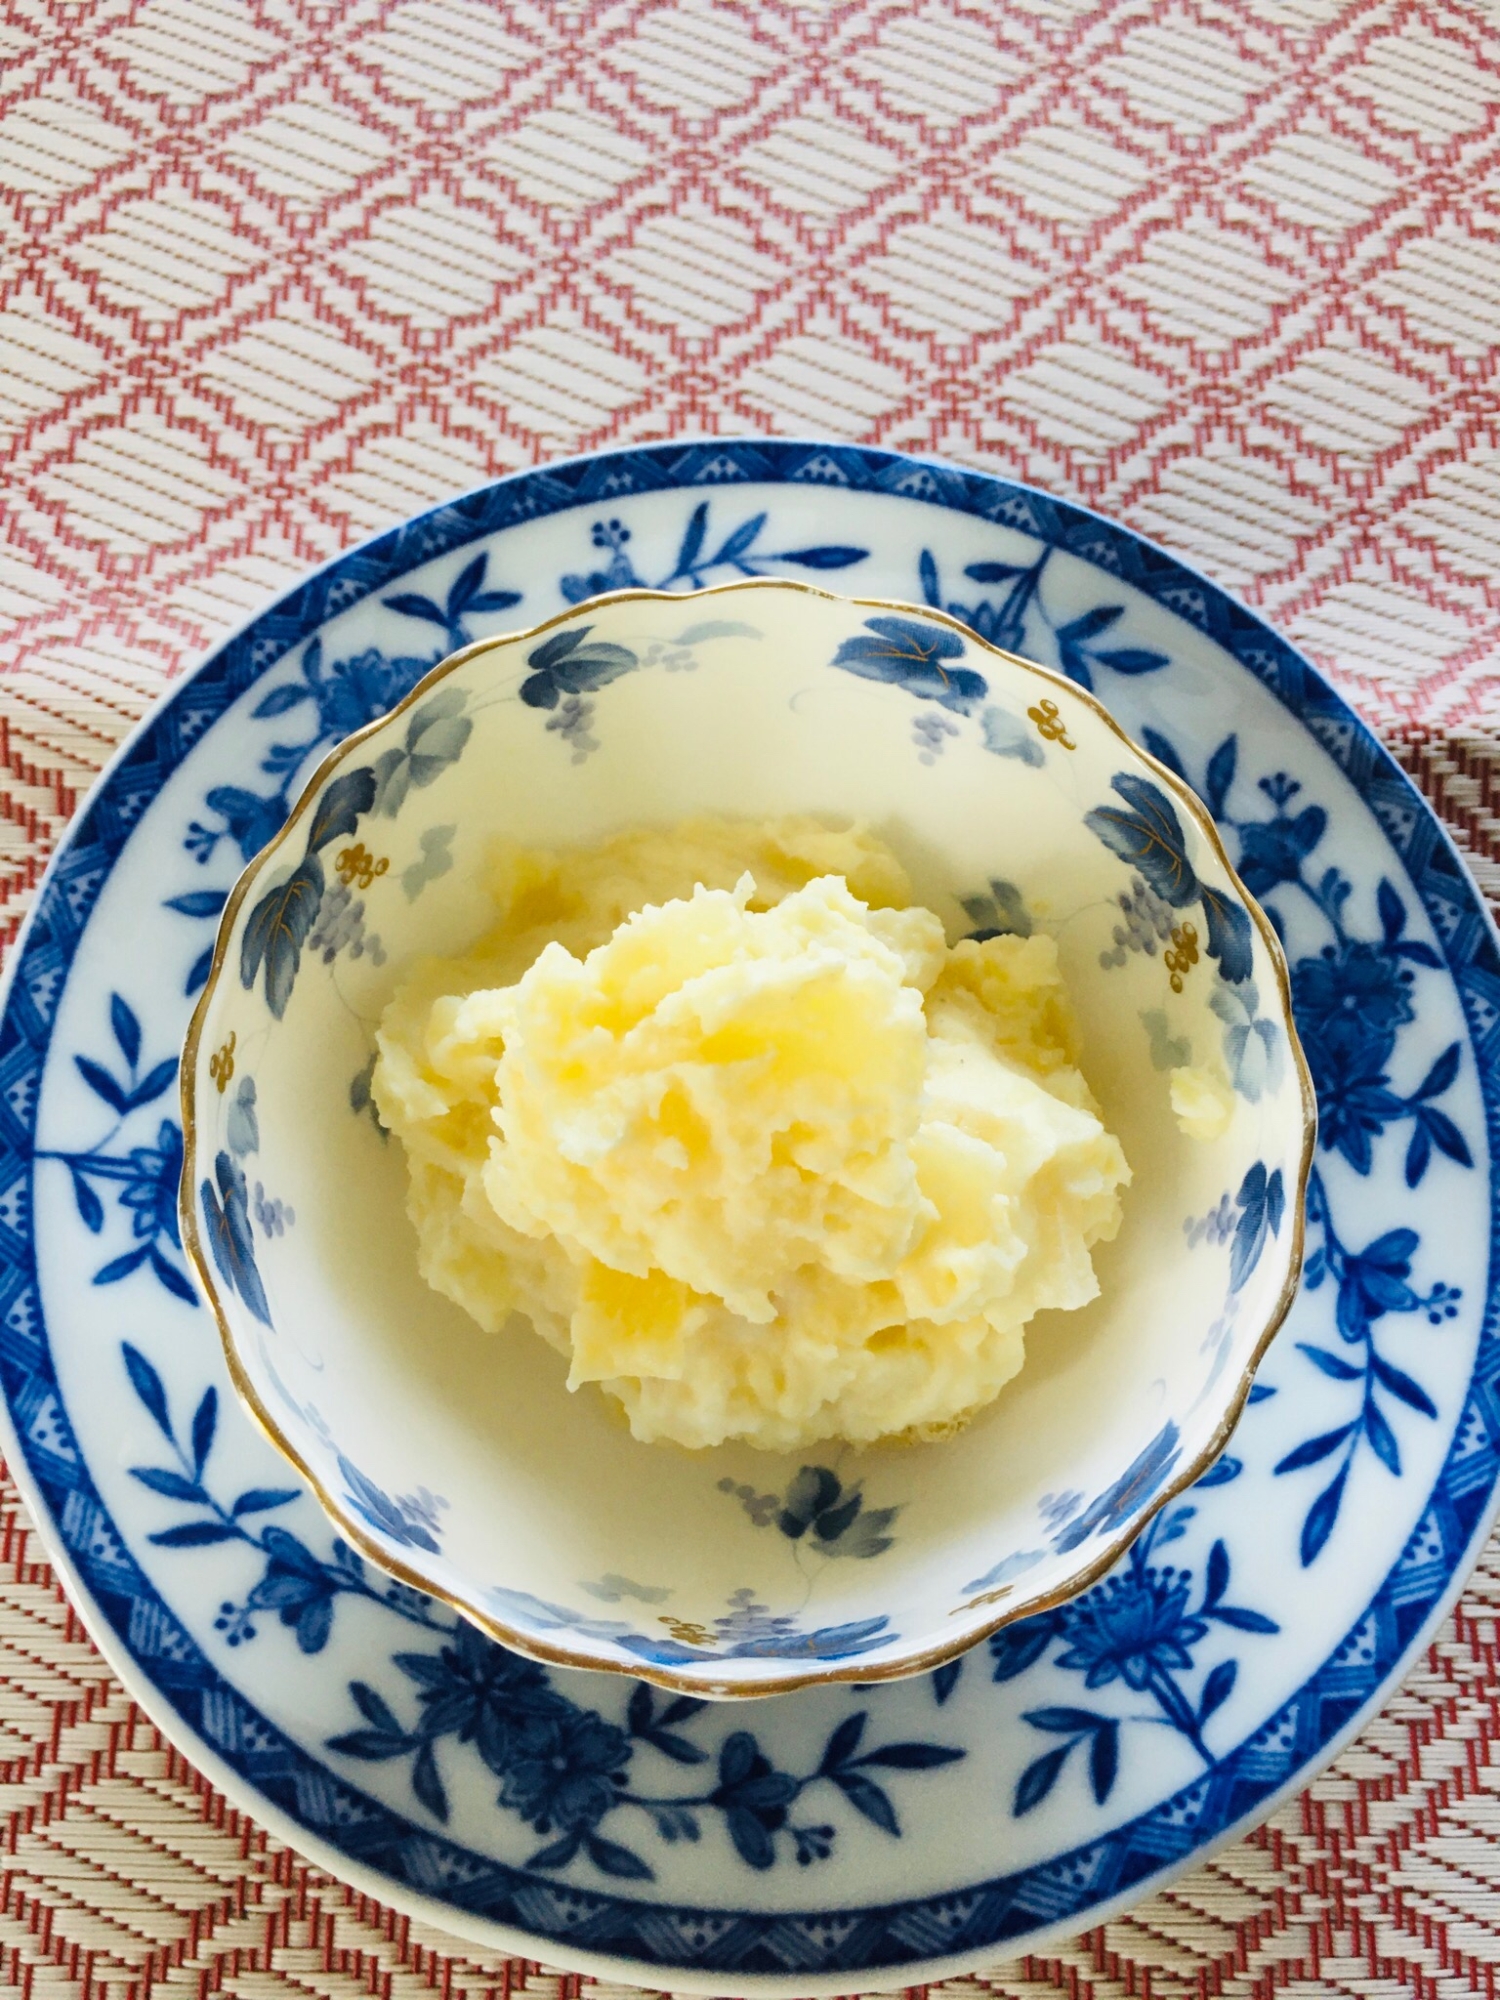 シンプルでも美味しい たくあんのポテトサラダ レシピ 作り方 By Micchyo 楽天レシピ